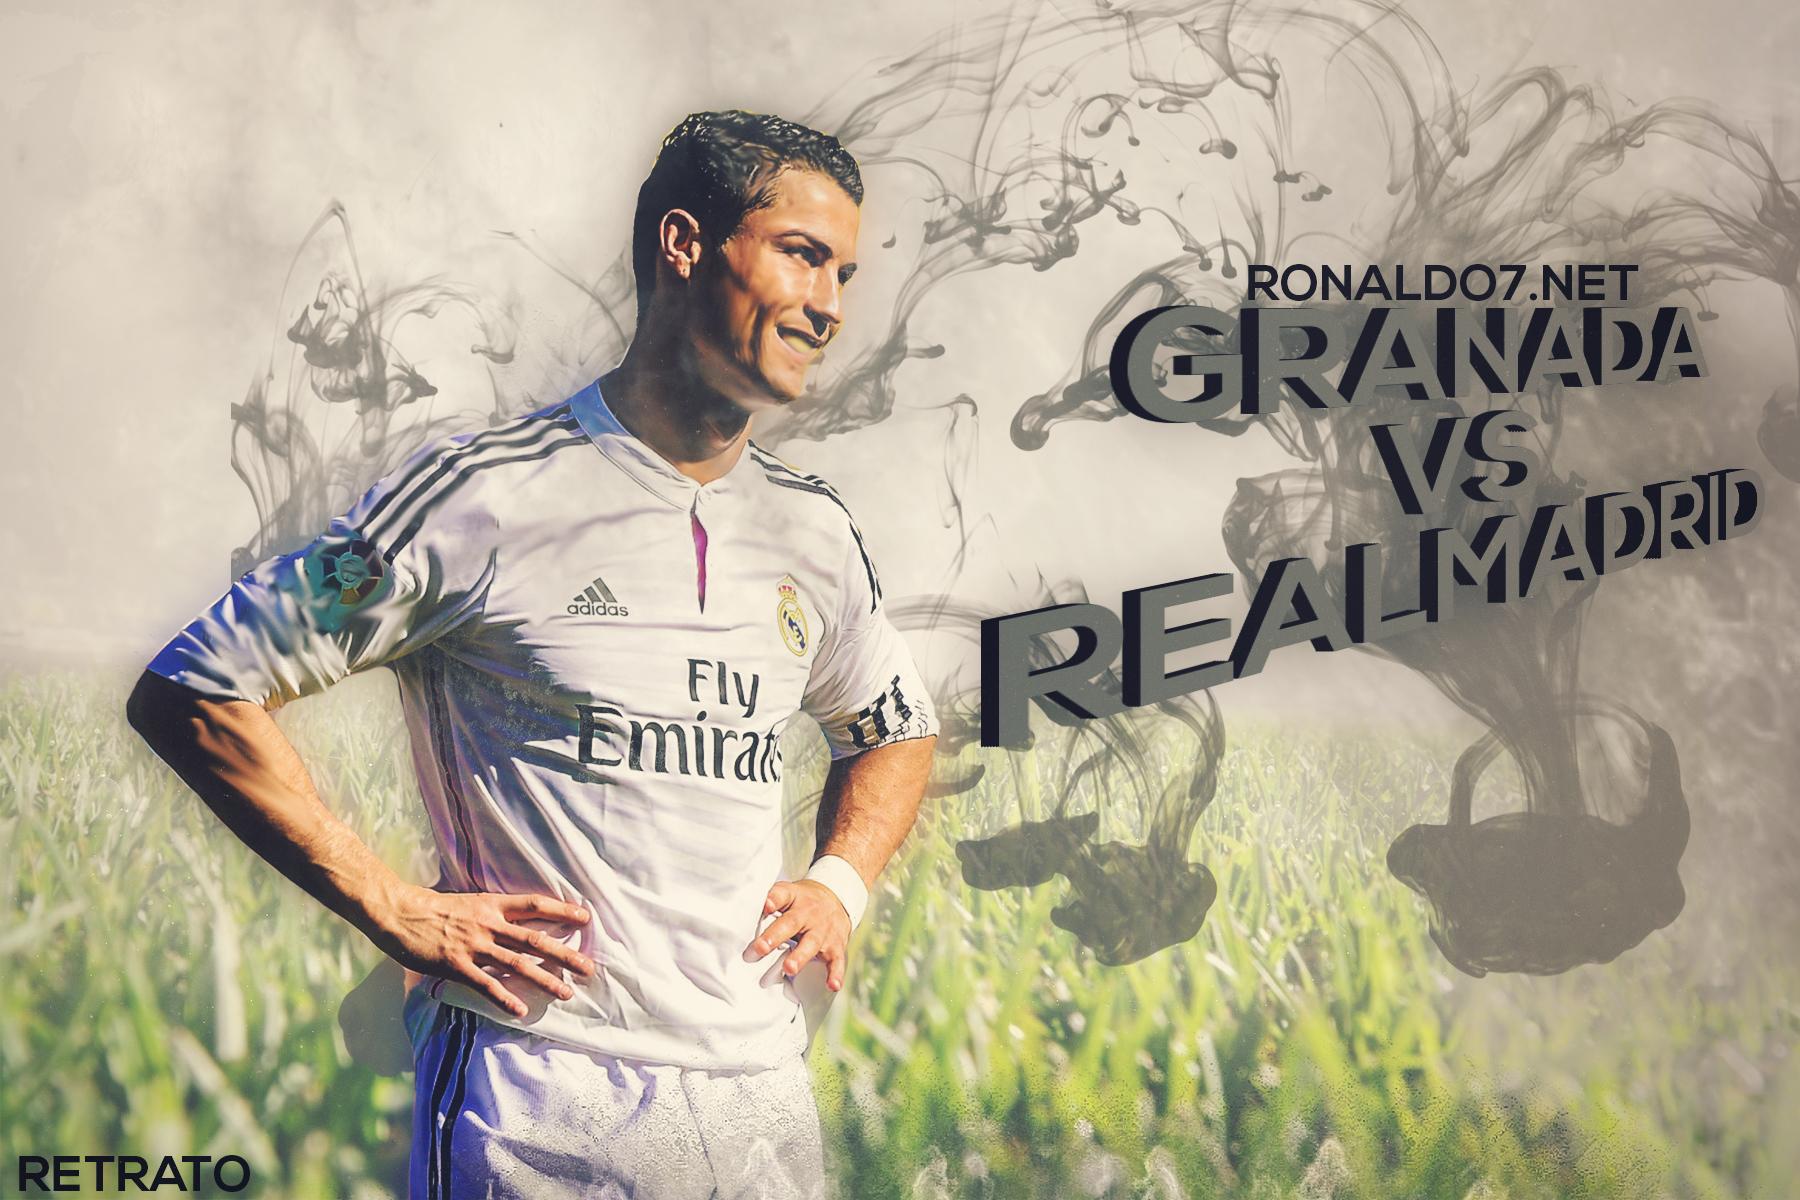 Cristiano Ronaldo (@Ronaldo7net) | Twitter1800 x 1200